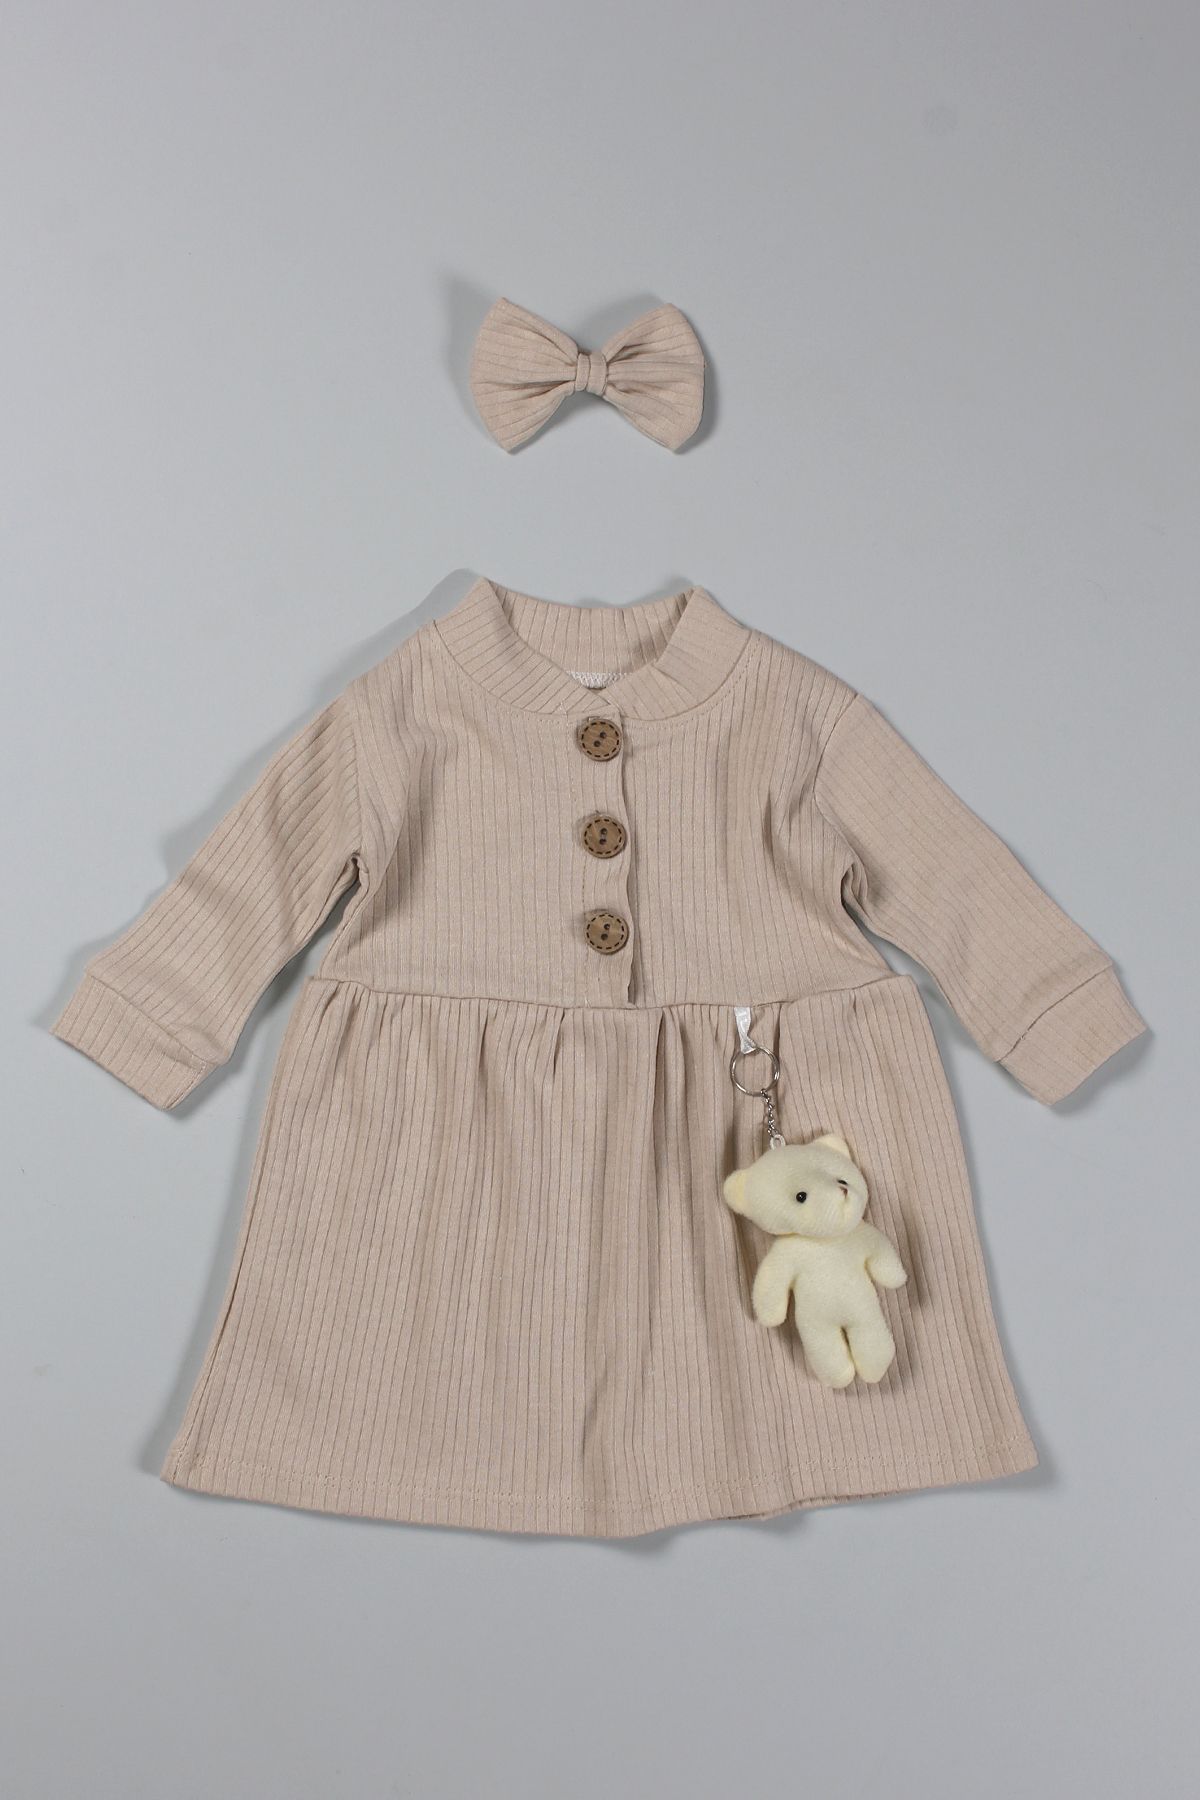 Peki Bebek 5 Al 4 Öde Çocuk Kız Pamuklu Ayıcık Figürlü Fiyonk Kıstırmalı Toka Fiyonk Kurdela Elbise 14710